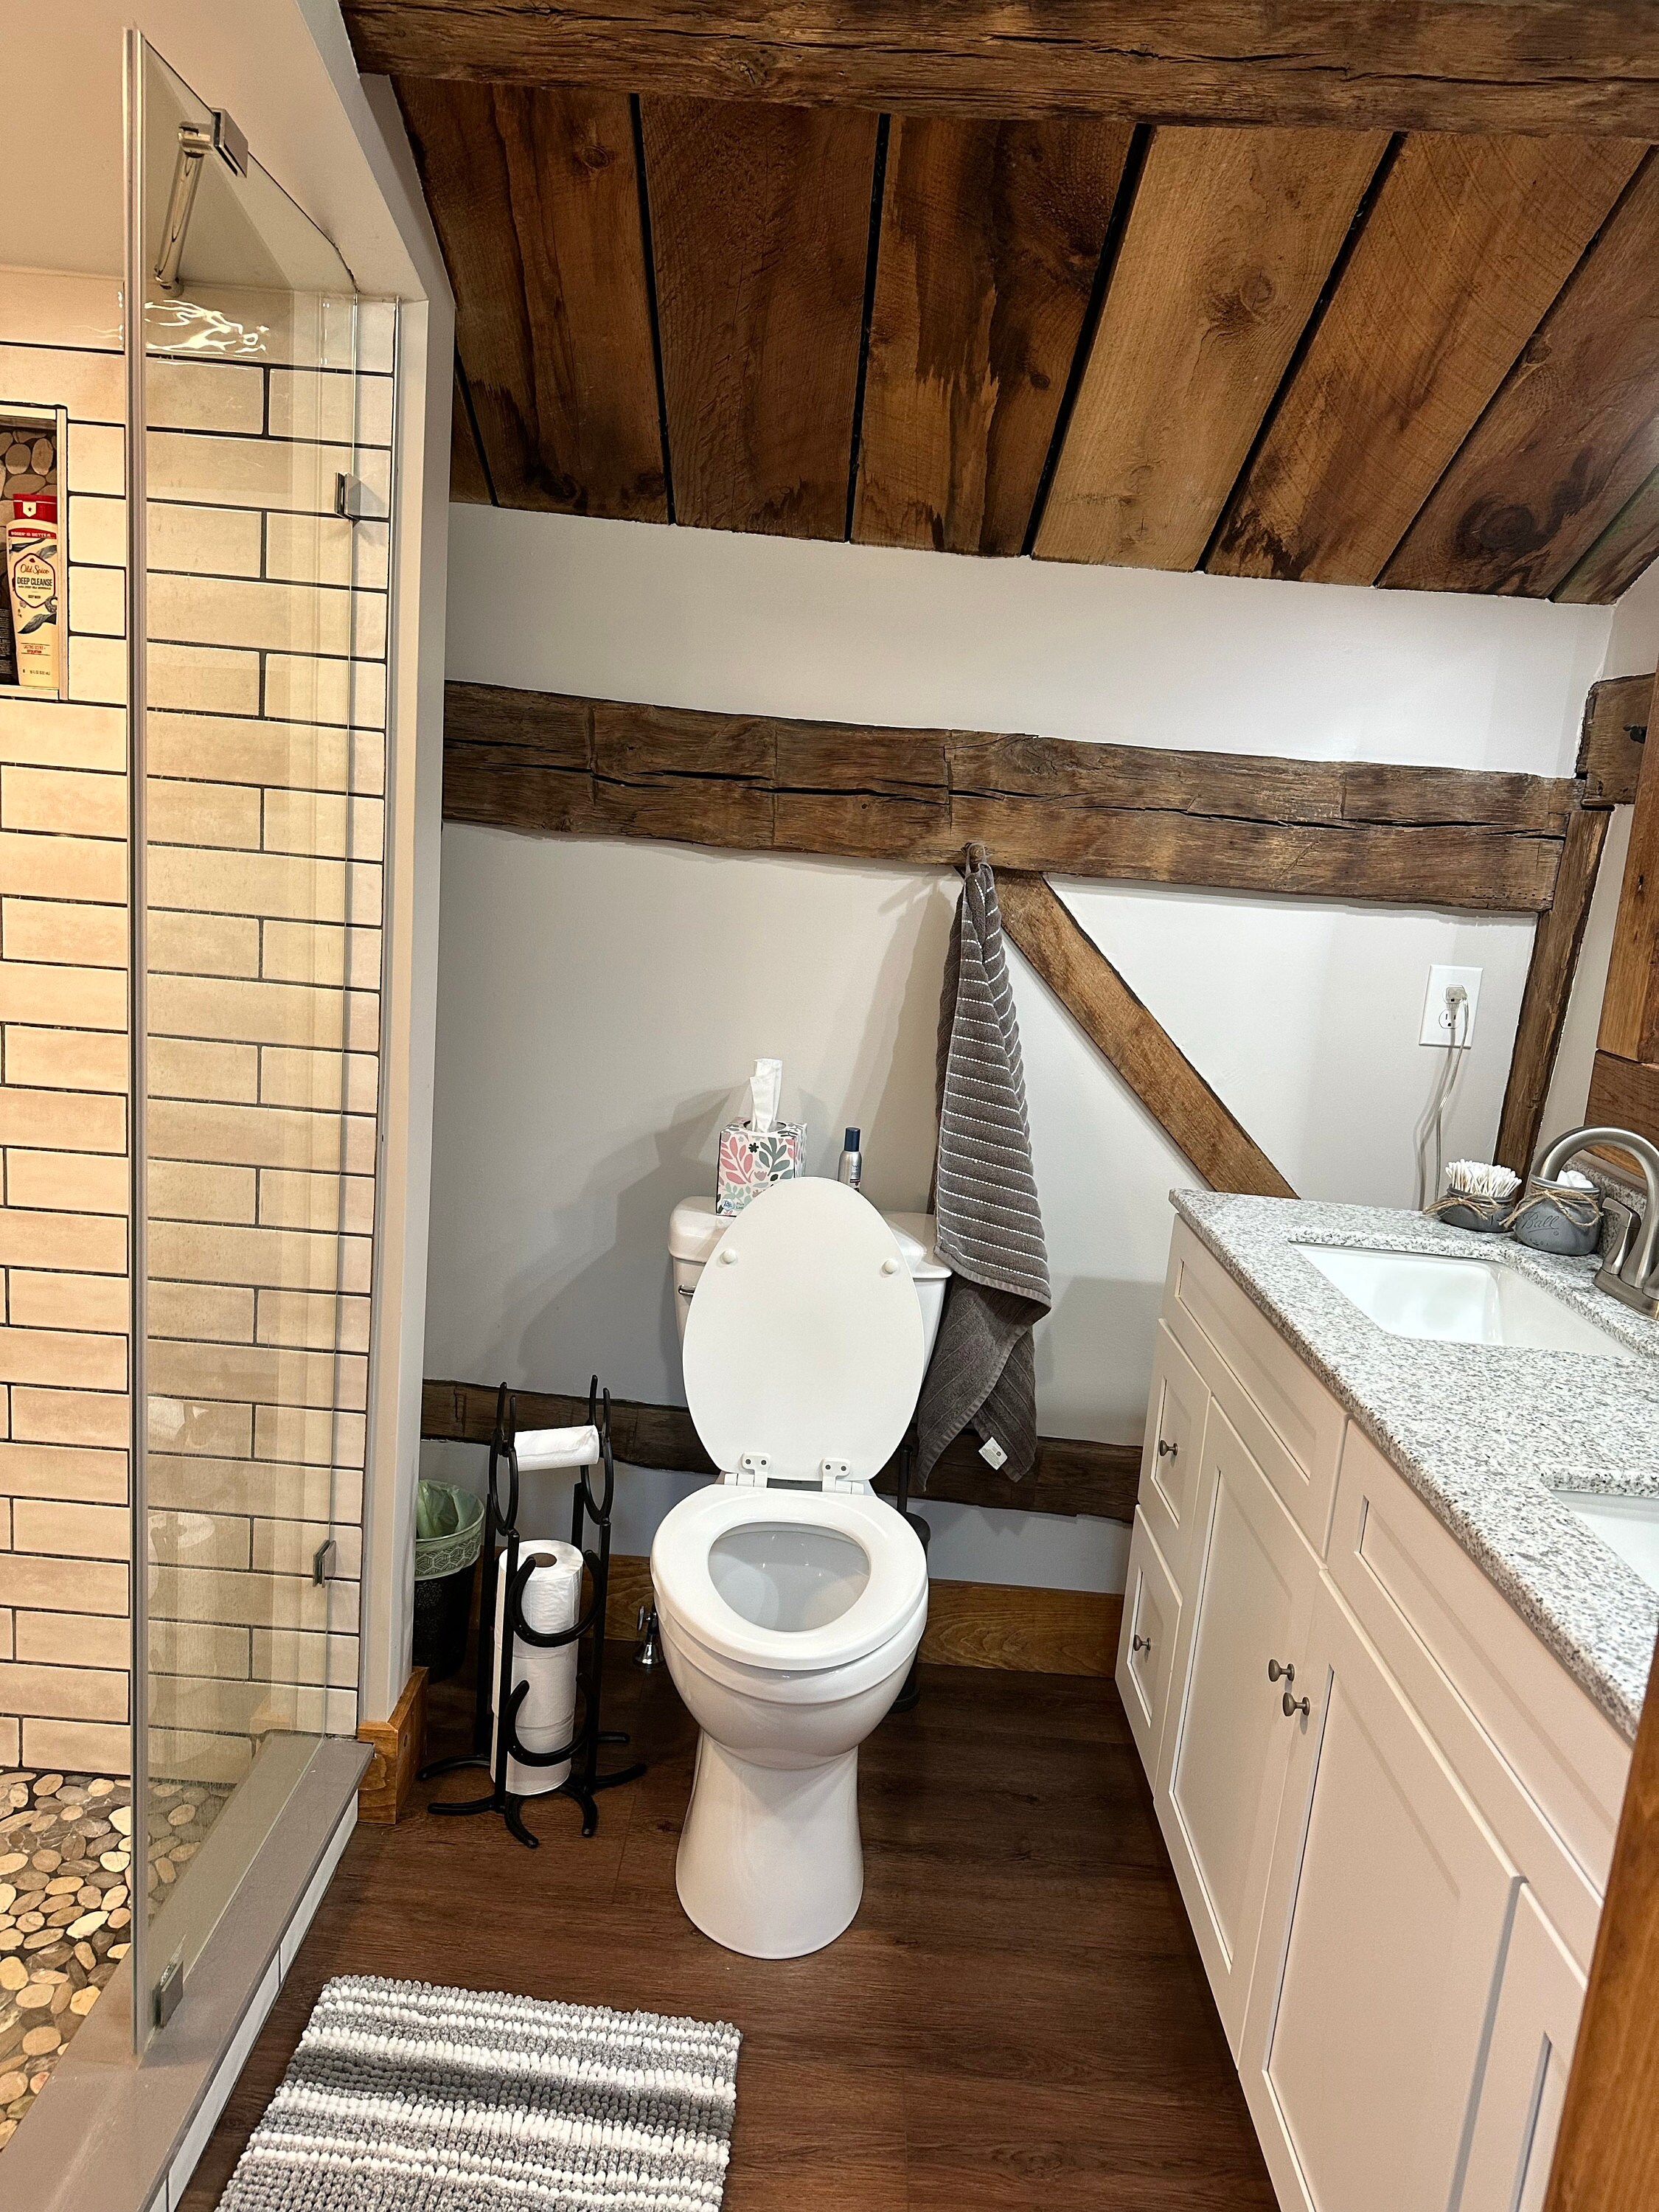 Horseshoe & Star Standing Toilet Paper Holder